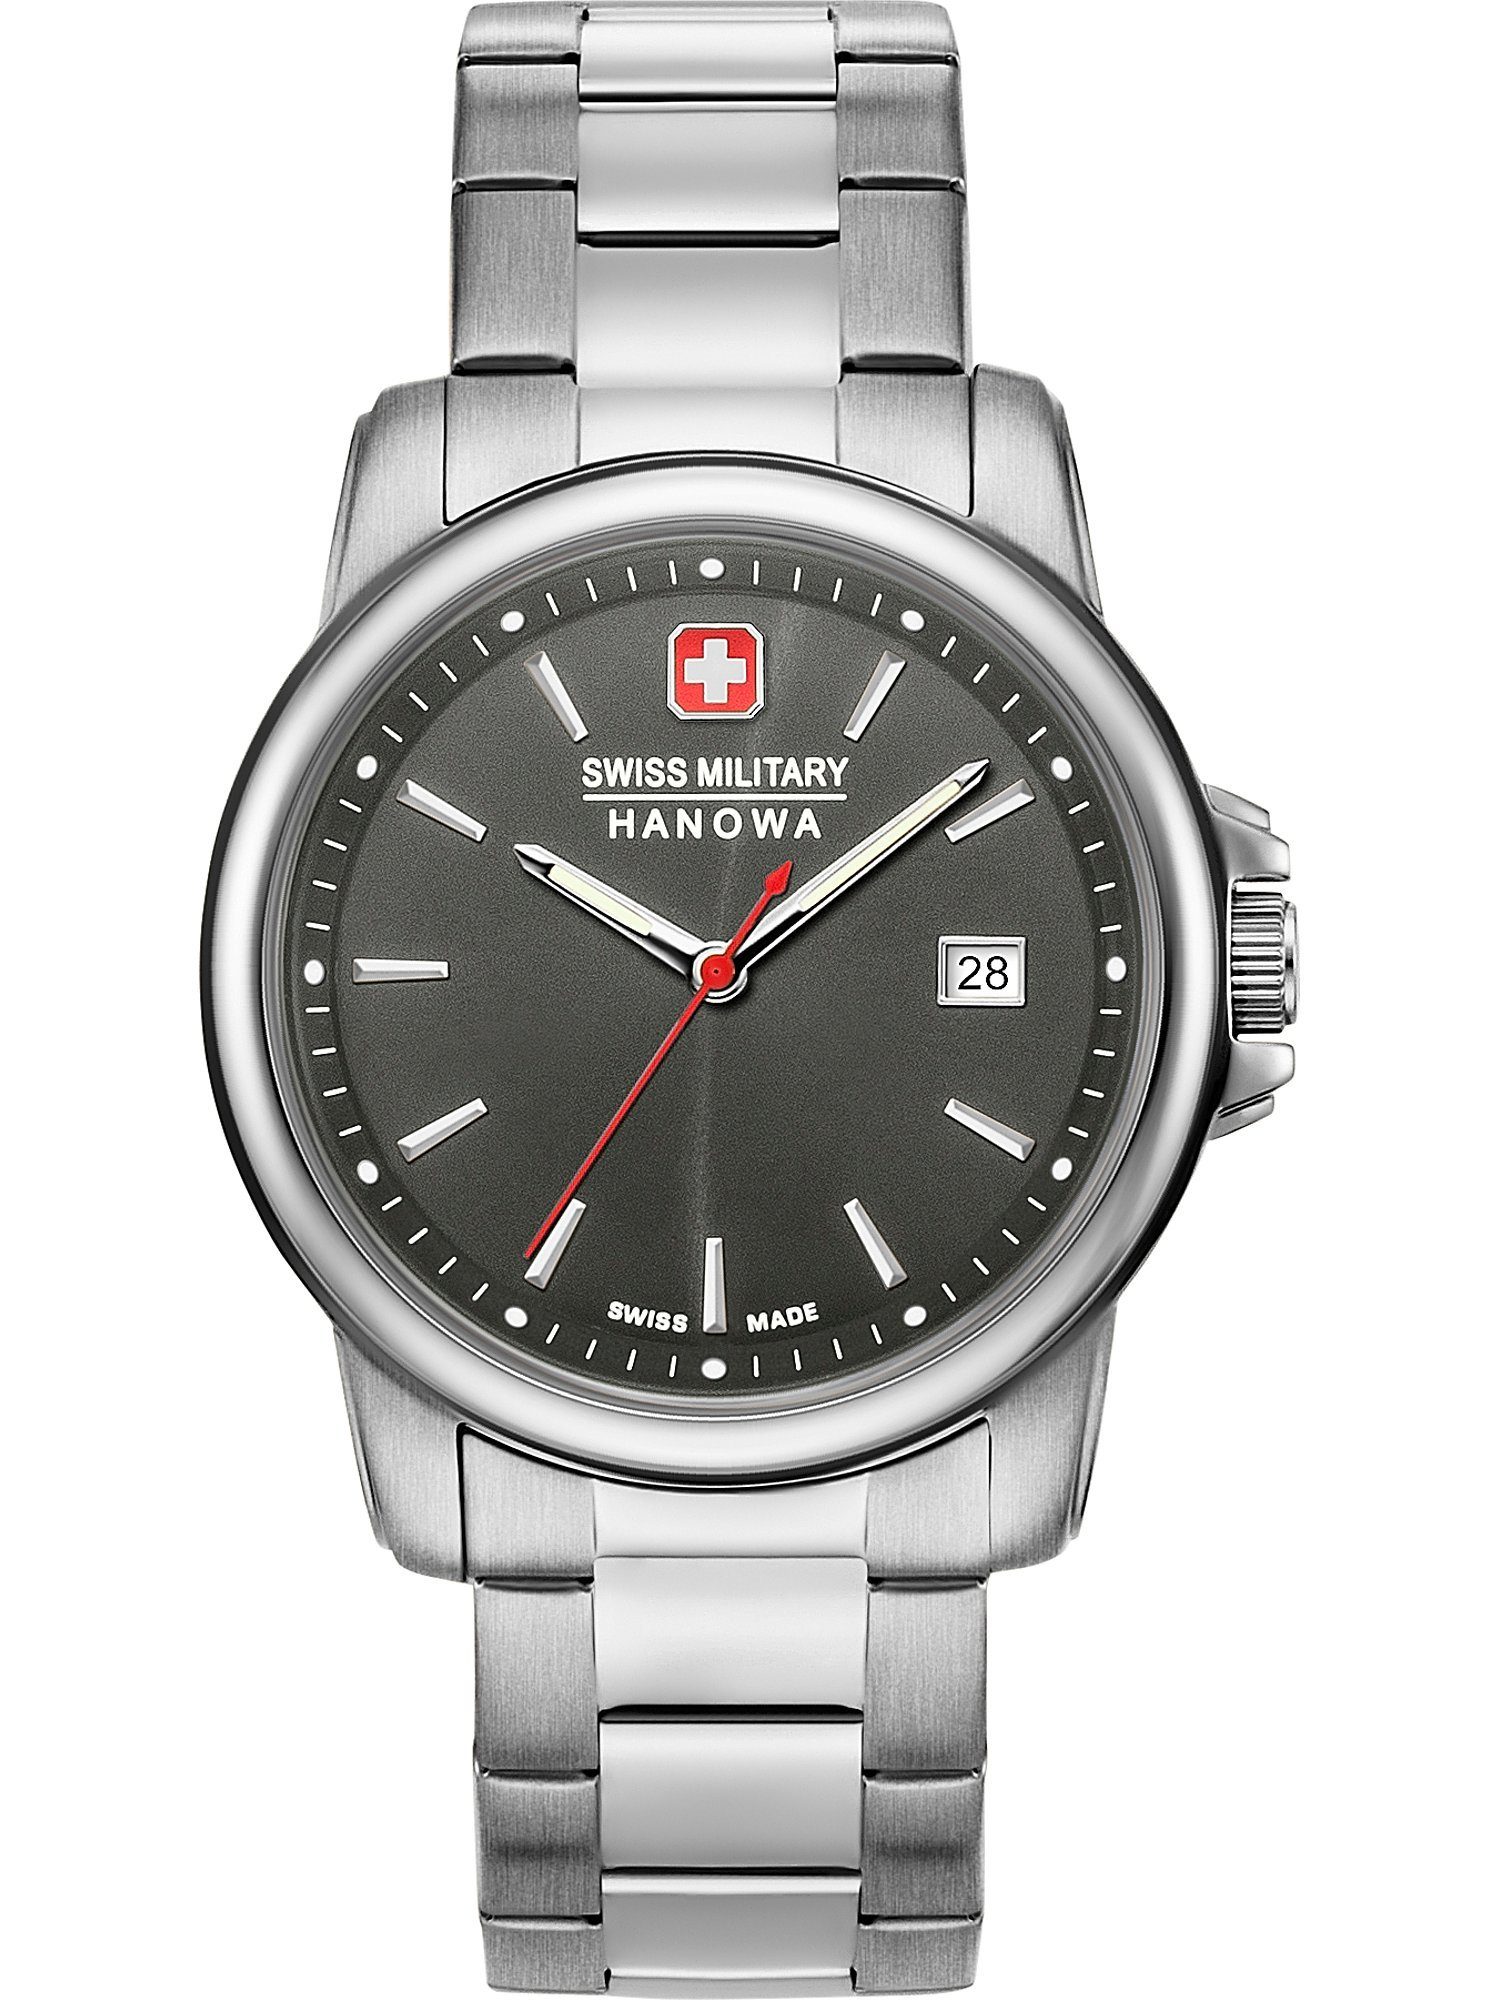 Swiss 06-5230.7.04.009, Schweizer ist RECRUIT Hanowa Accessoire Military II, SWISS Dieses jeden Anlass edle für Uhr